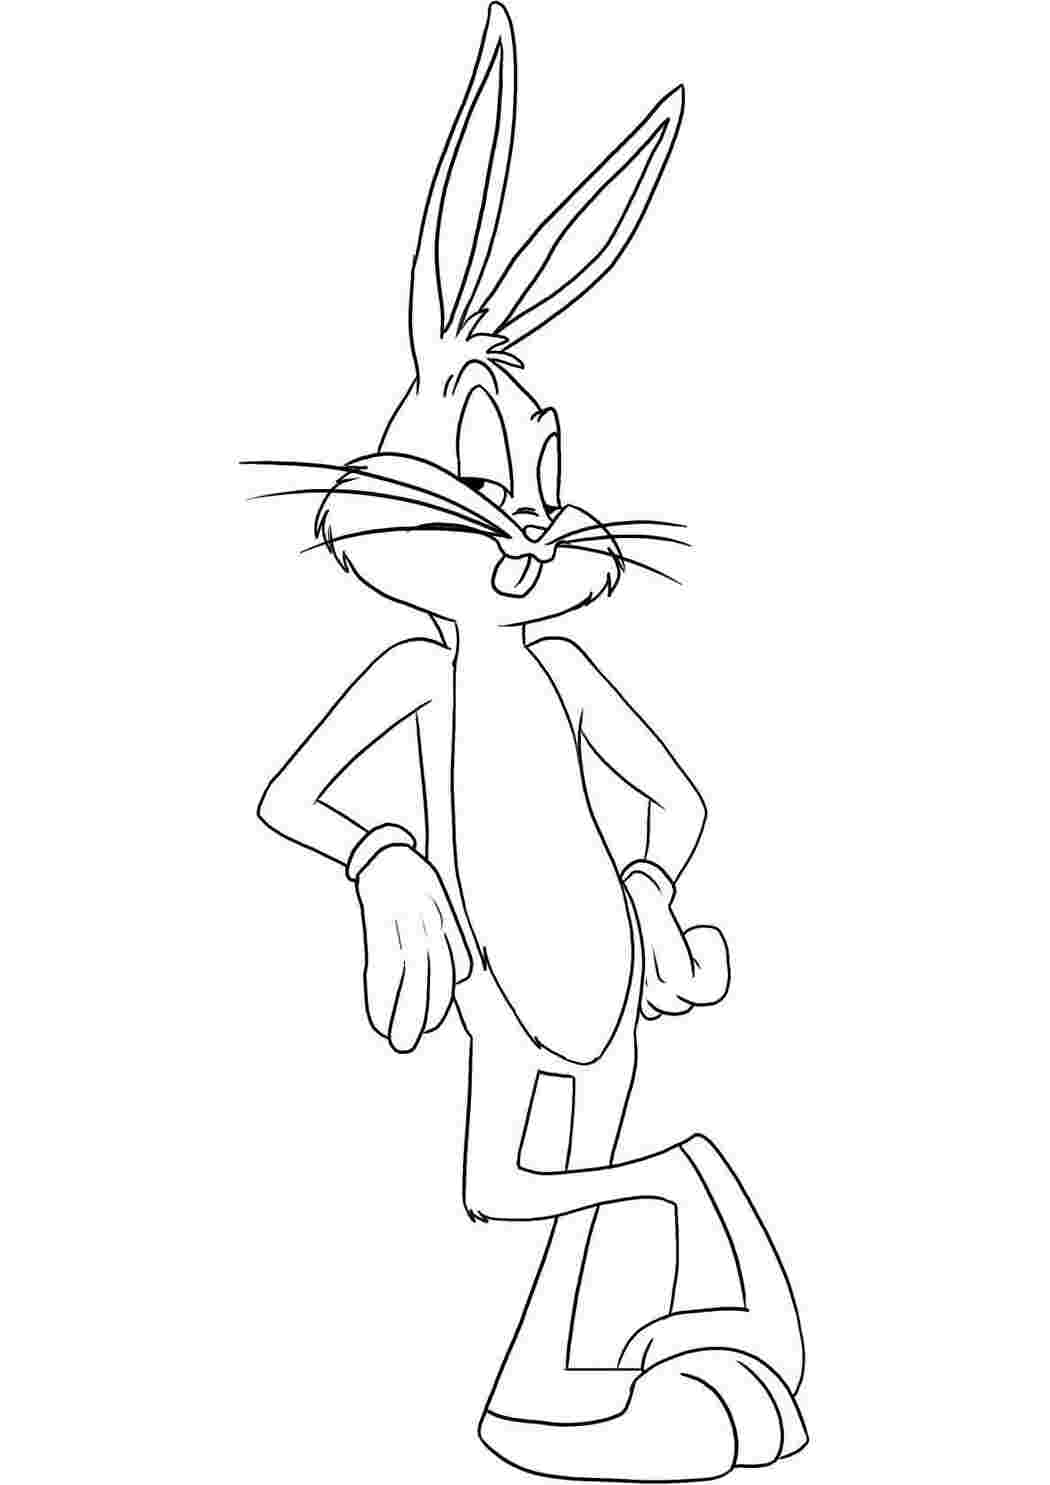 Раскраски Рисунок зайца багс банни домашние животные мультфильм, заяц